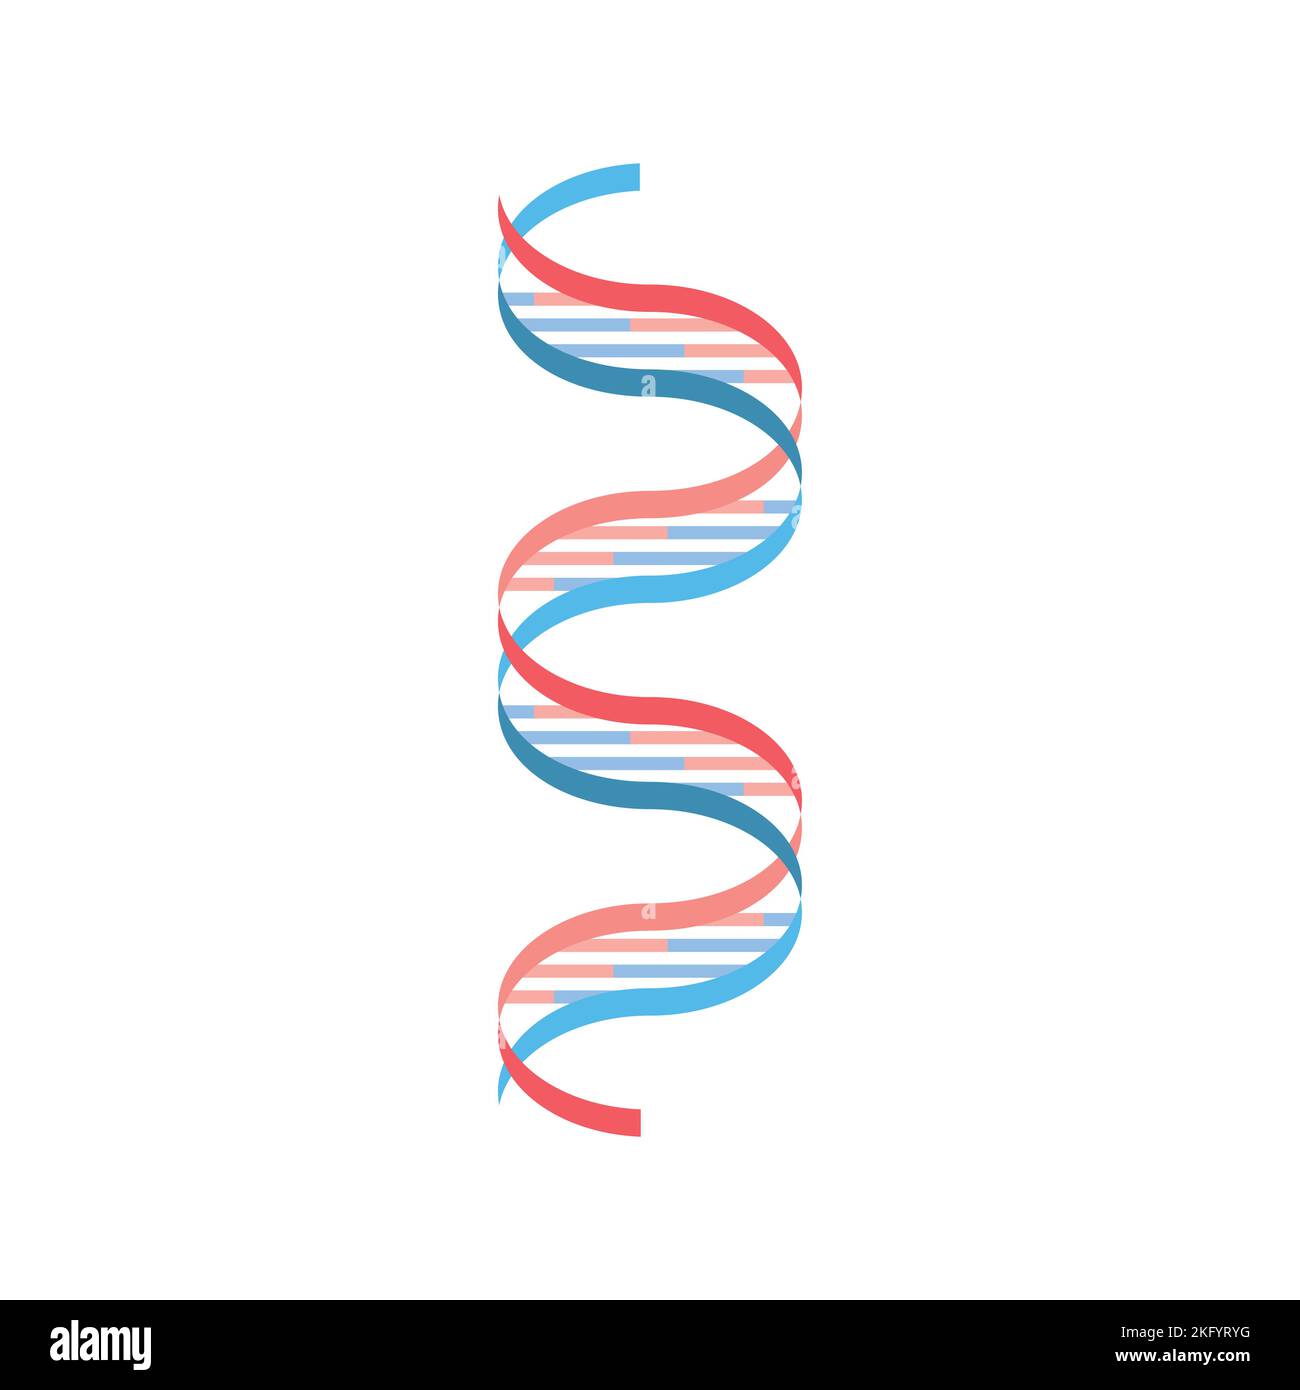 Conception scientifique du modèle d'ADN Watson et Crick. Symboles colorés. Illustration vectorielle. Illustration de Vecteur